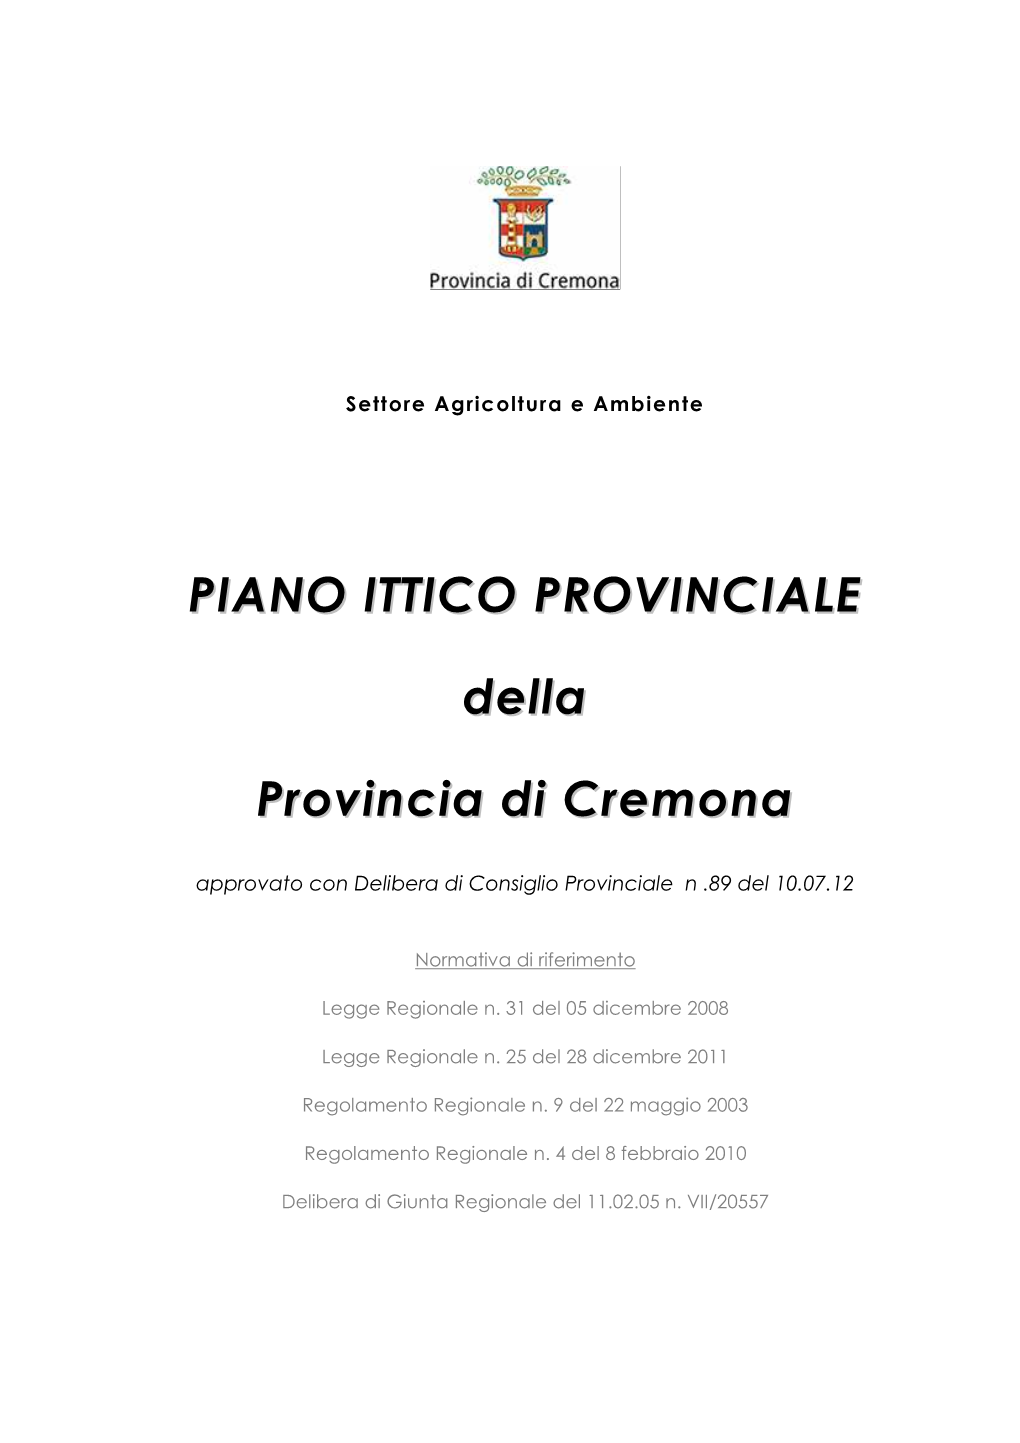 PIANO ITTICO PROVINCIALE Della Provincia Di Cremona